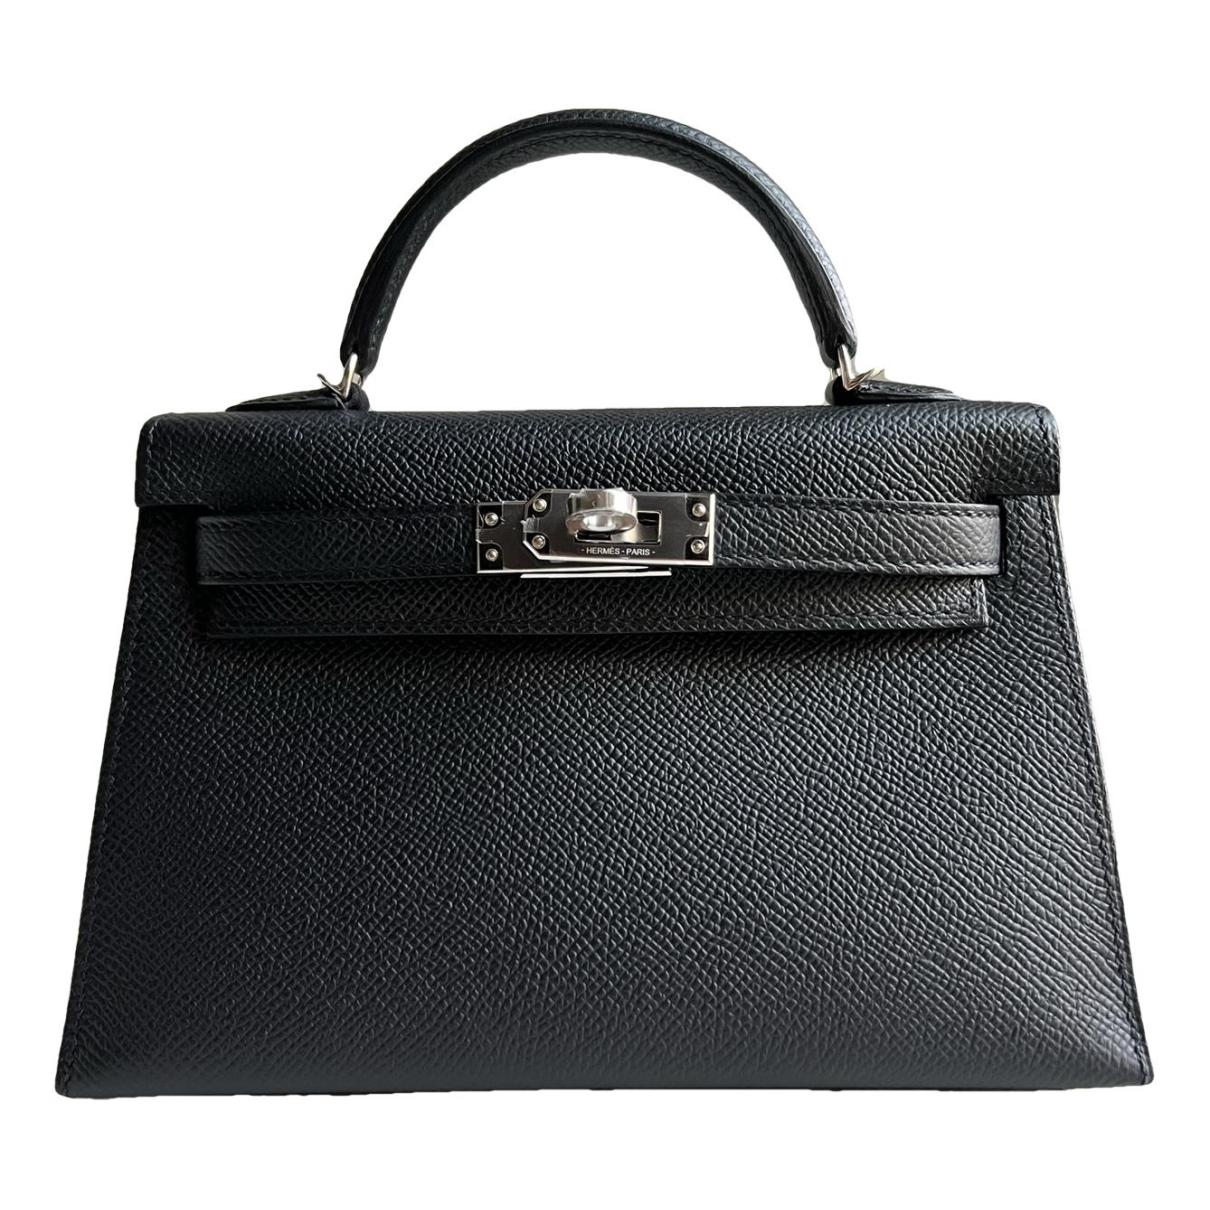 Kelly Mini leather handbag